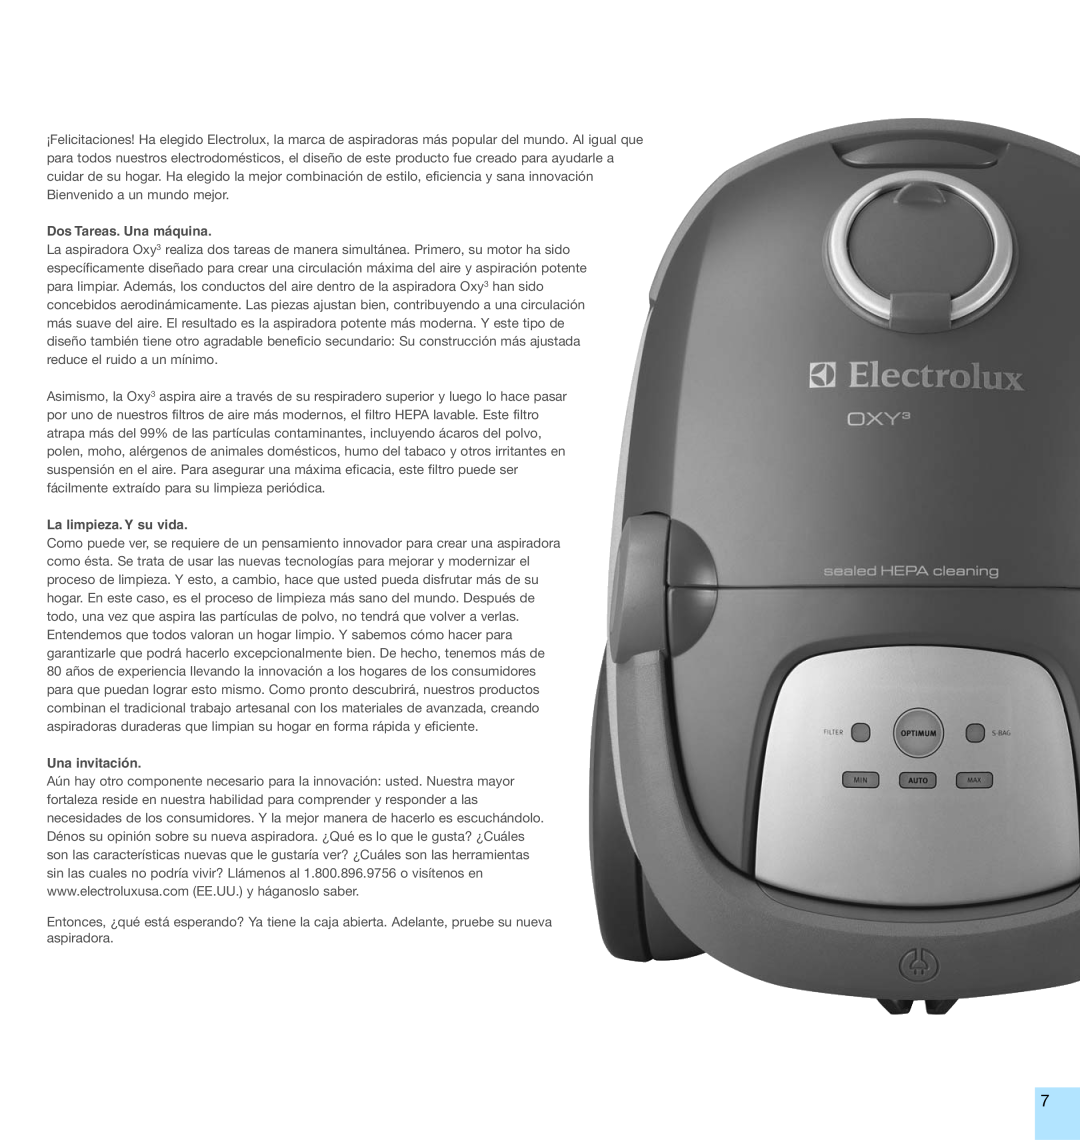 Electrolux EL7000A manual Dos Tareas. Una máquina, La limpieza. Y su vida, Una invitación 